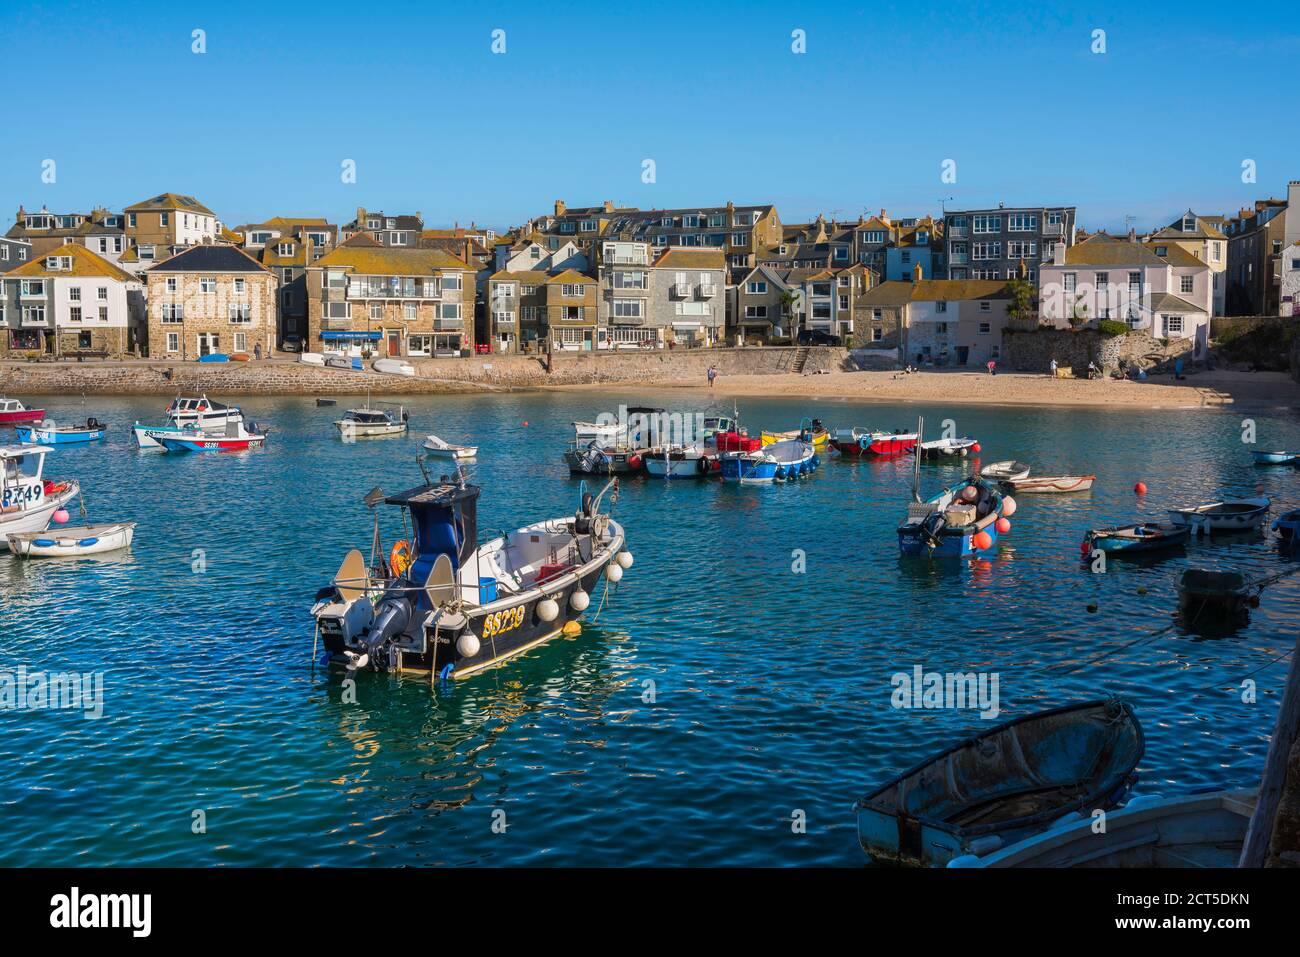 Staycation UK, Blick im Sommer auf Fischerboote, die im Hafen in St. Ives, Cornwall, Südwestengland, Großbritannien, festgemacht sind Stockfoto